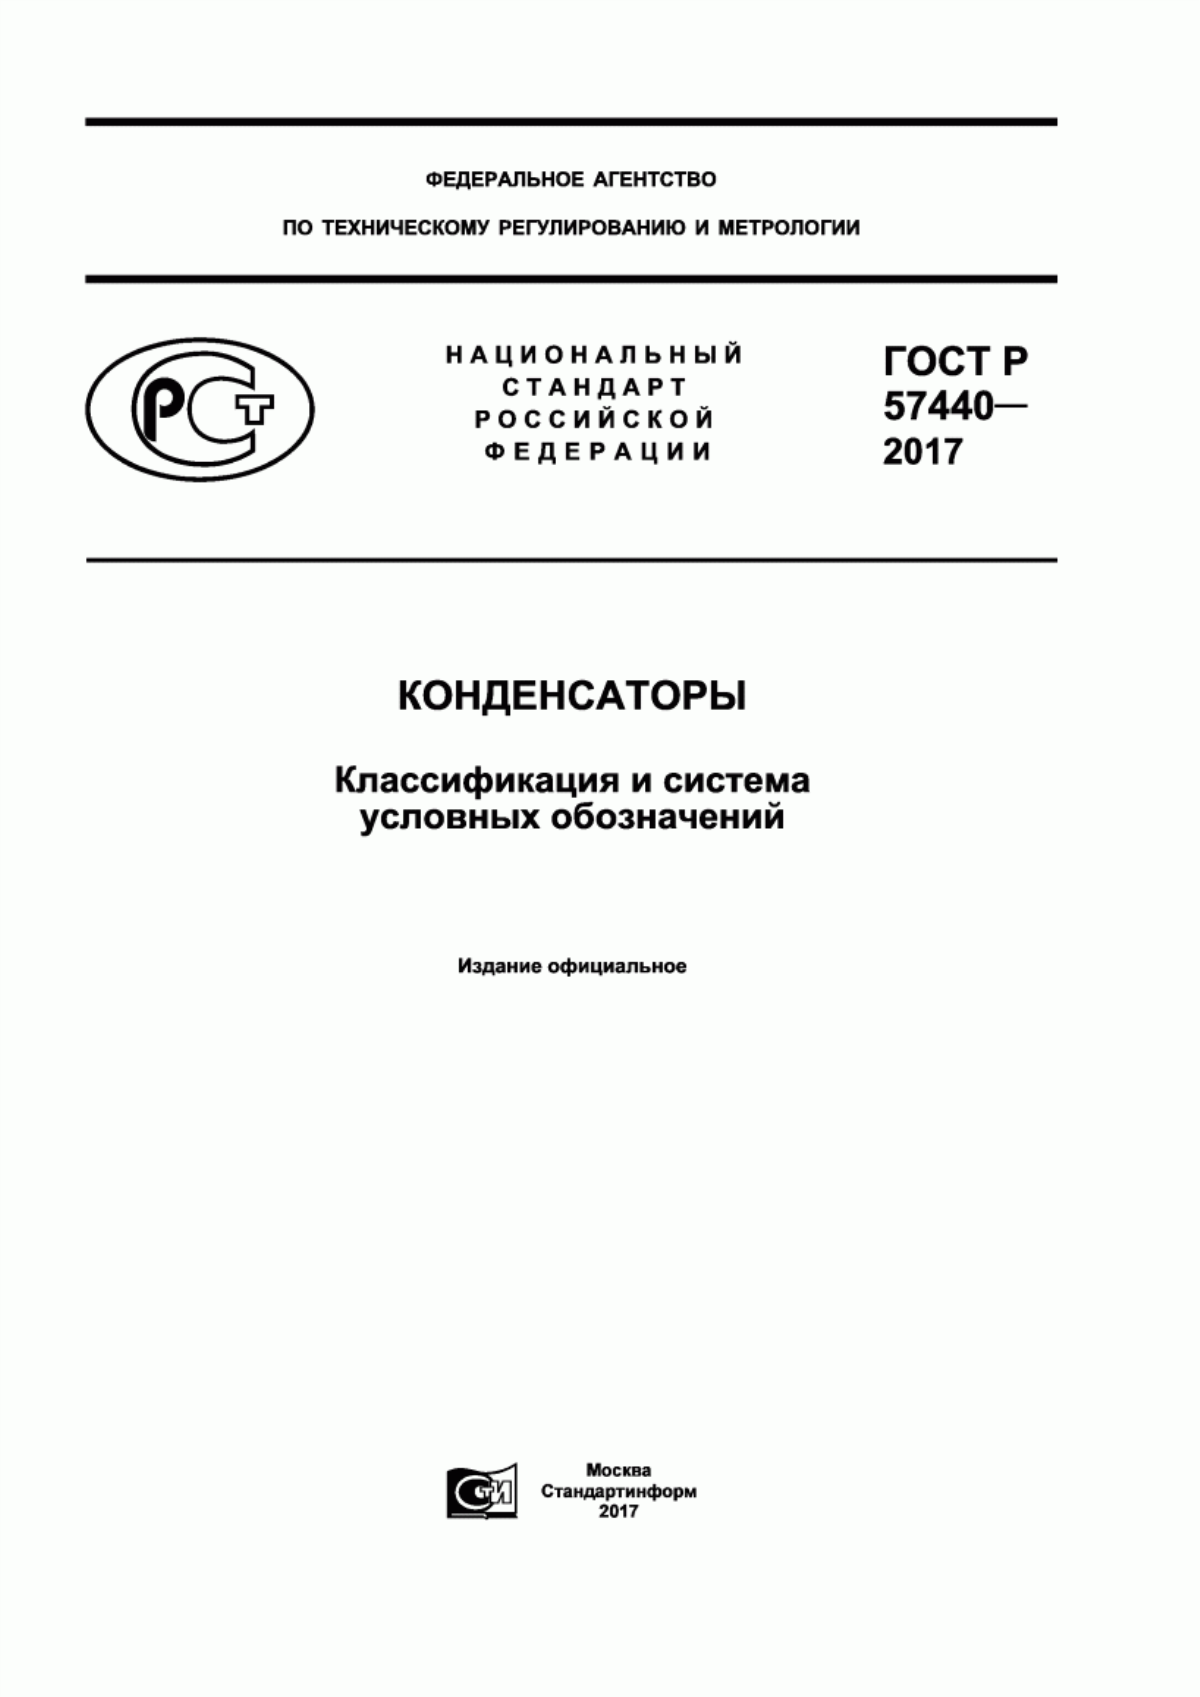 ГОСТ Р 57440-2017 Конденсаторы. Классификация и система условных обозначений